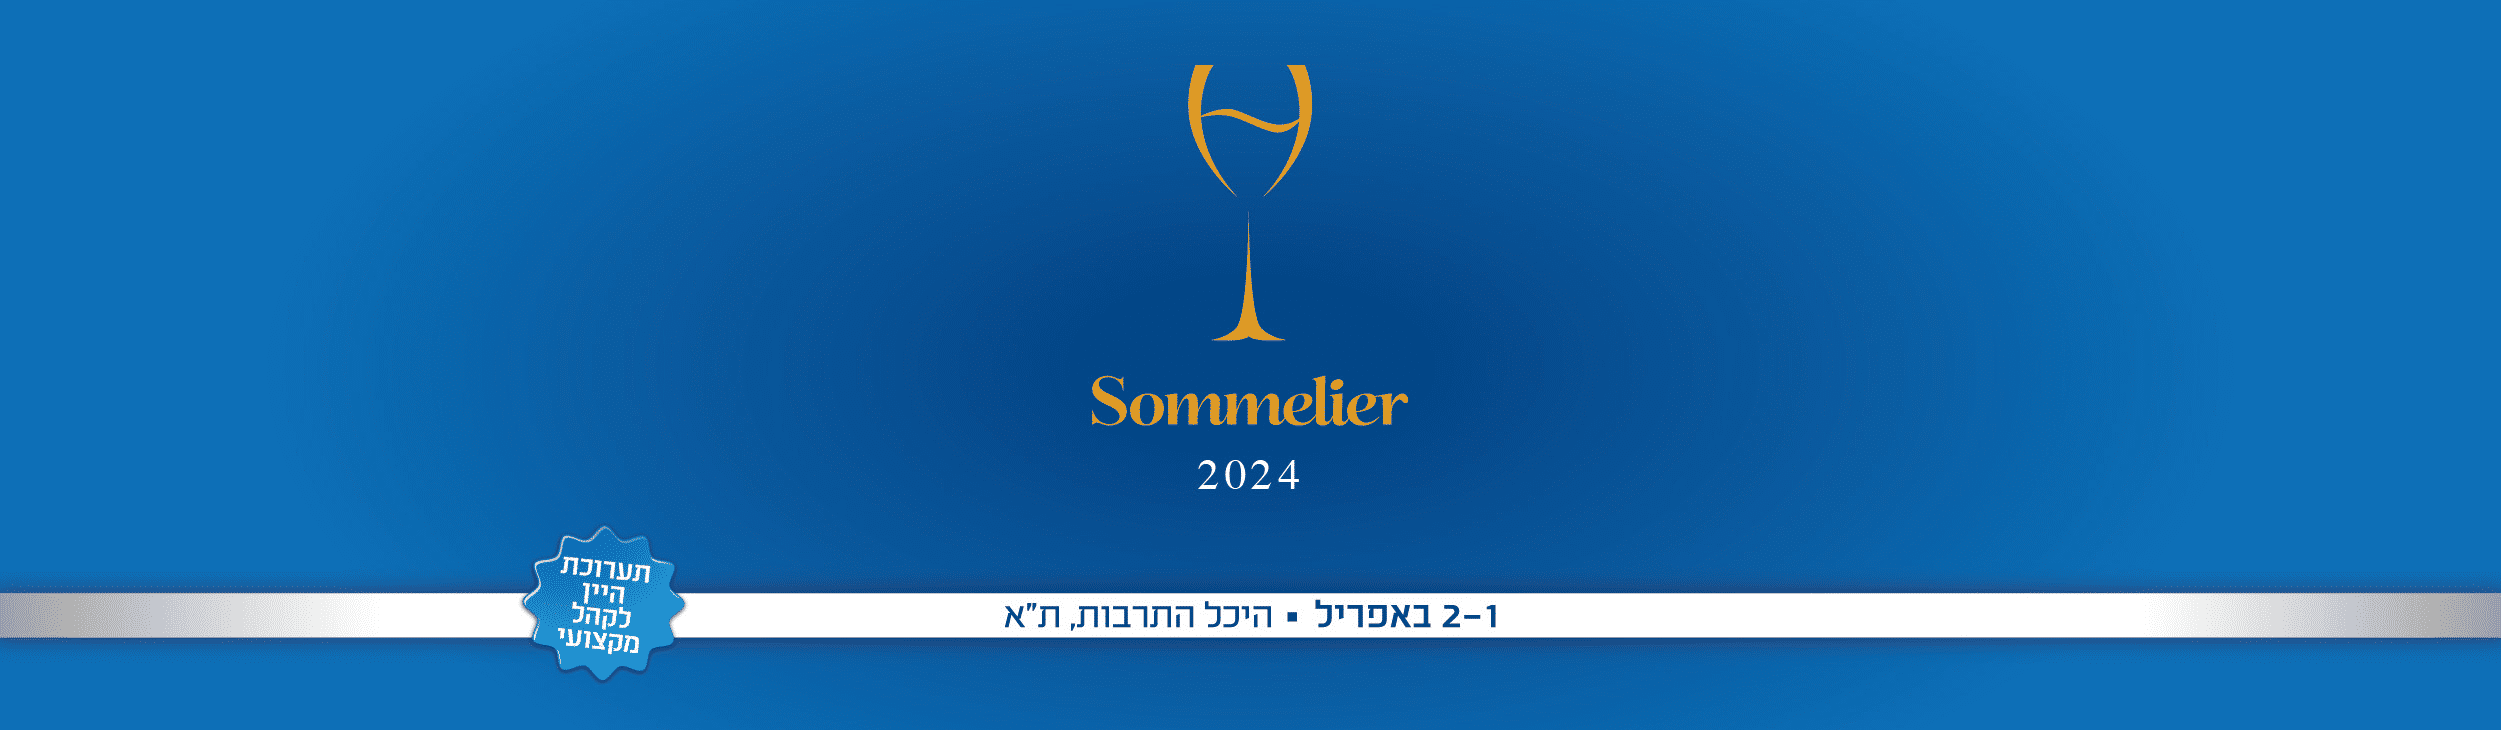 SOMMELIER 2024